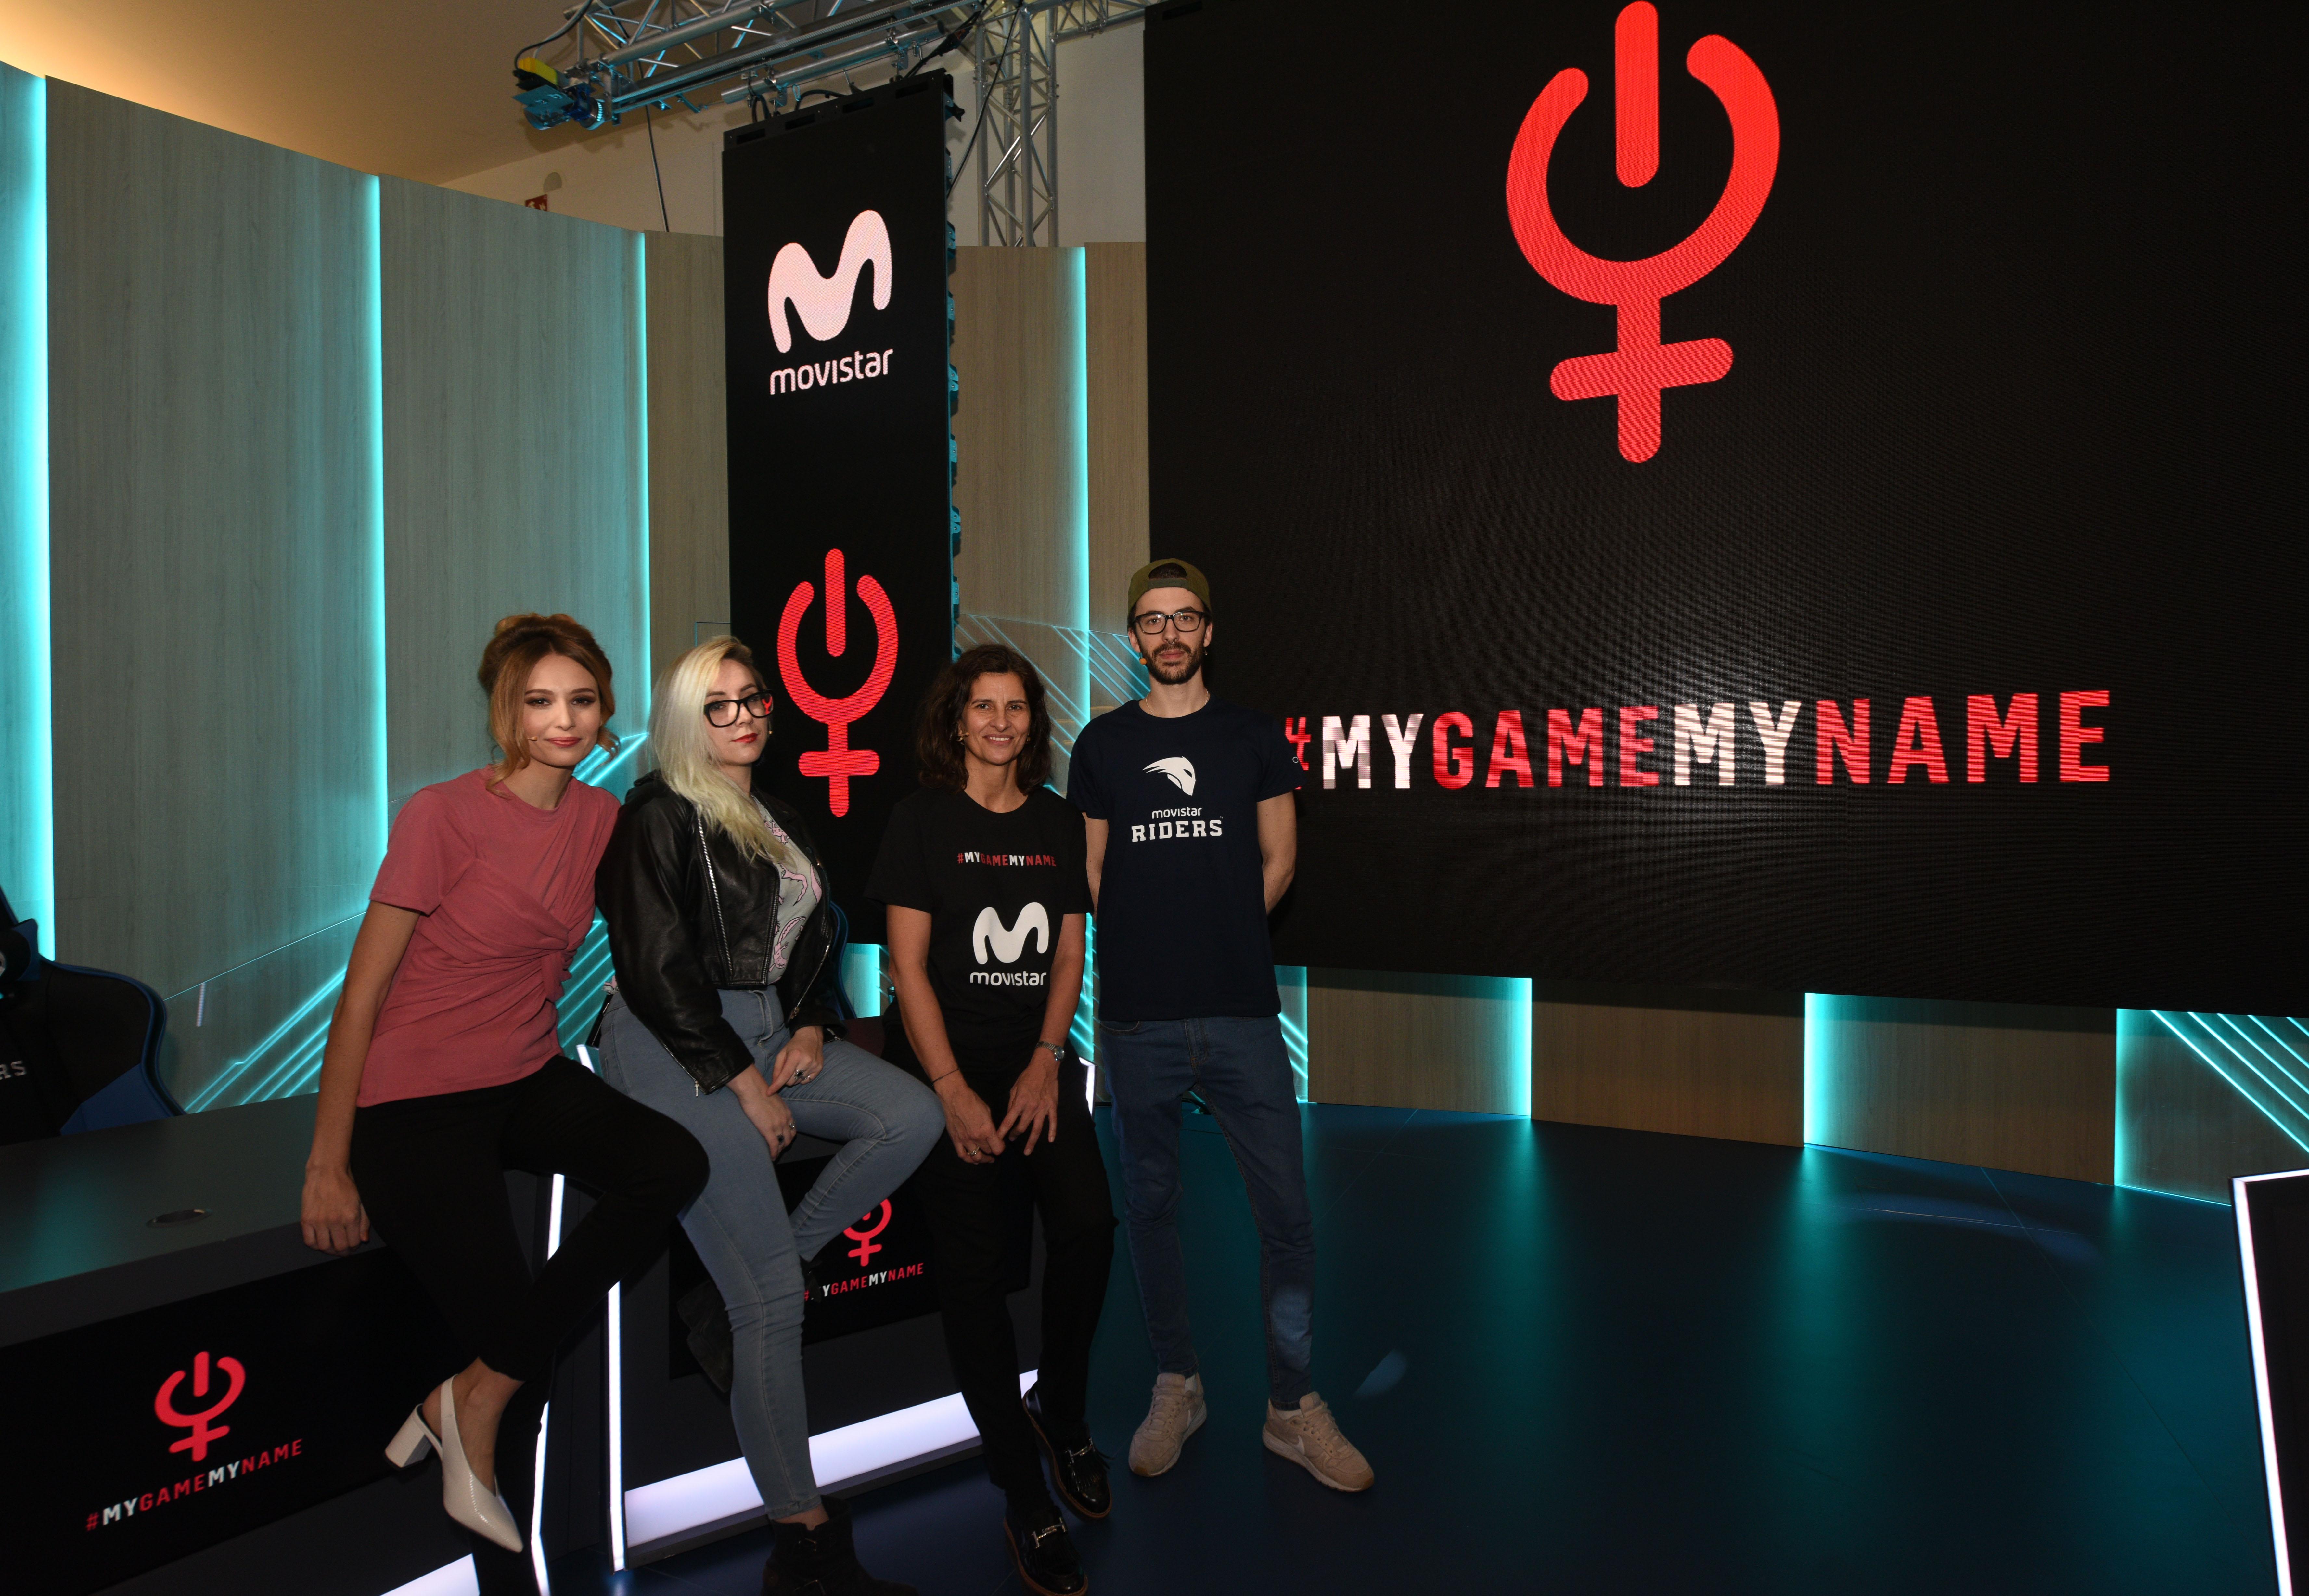 Equipos masculino y femenino del club de eSports Movistar Riders dando su apoyo a la iniciativa internacional #MyGameMyName